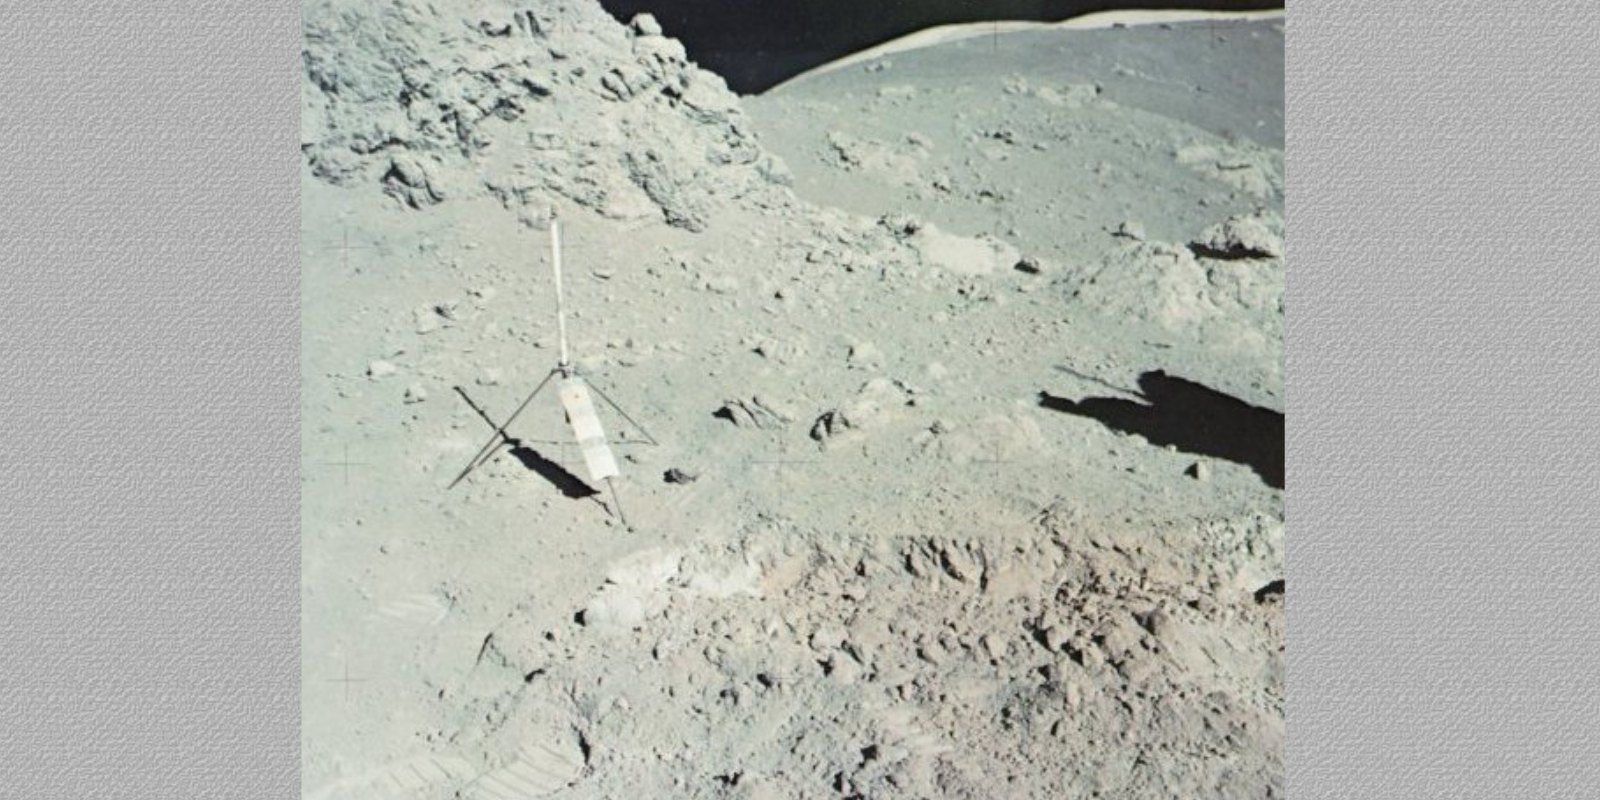 Orange soil near Station 4 on Apollo 17 